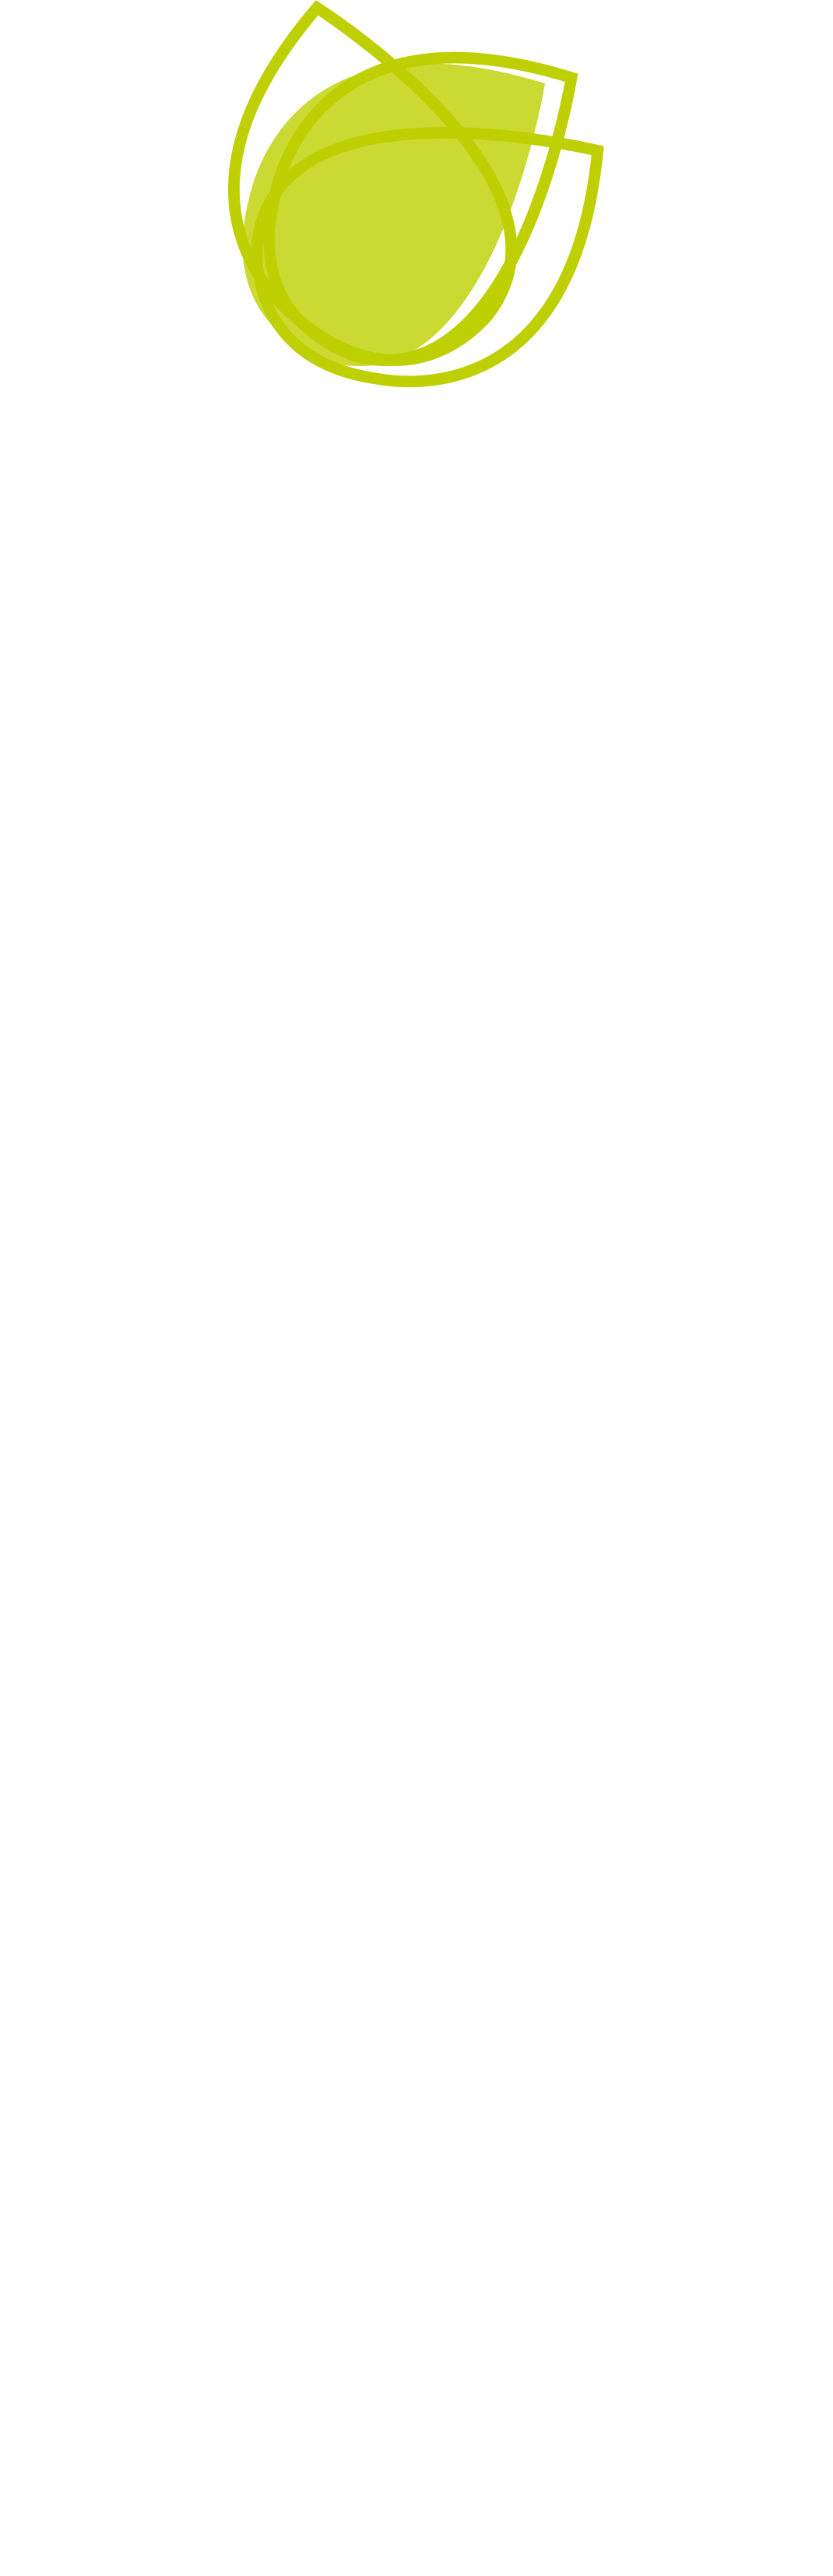 Die Straussbar by Kerstin Pieper